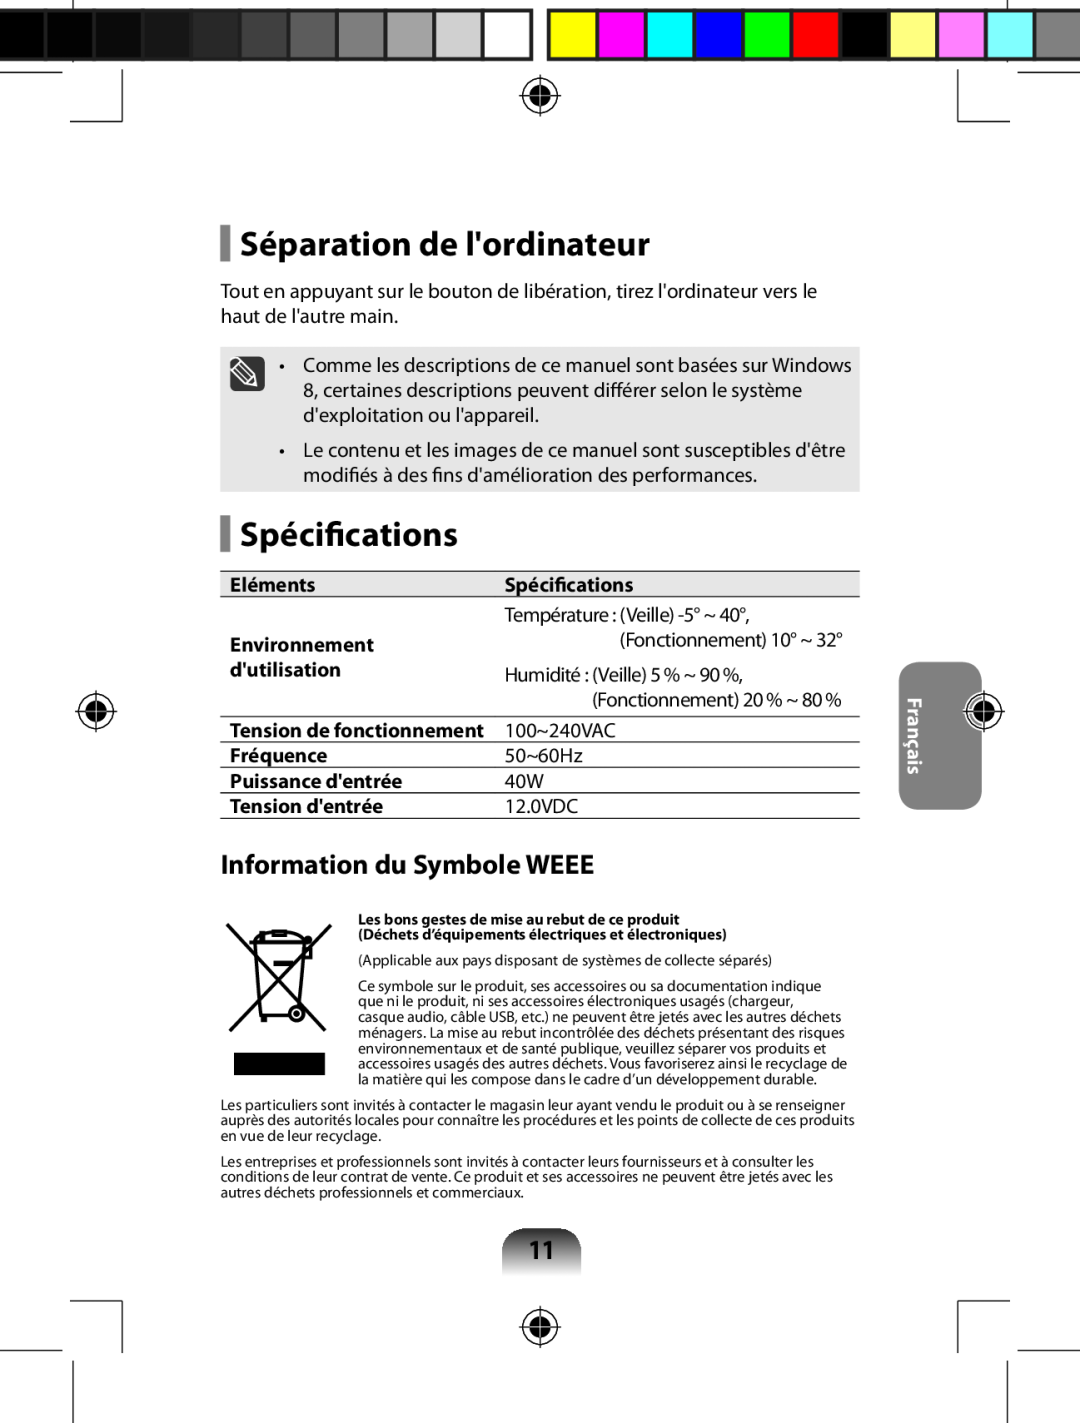 Samsung AA-RD7NMKD/US, AARD7NSDOUS manual Séparation de lordinateur, Spécifications, Information du Symbole WEEE, Français 